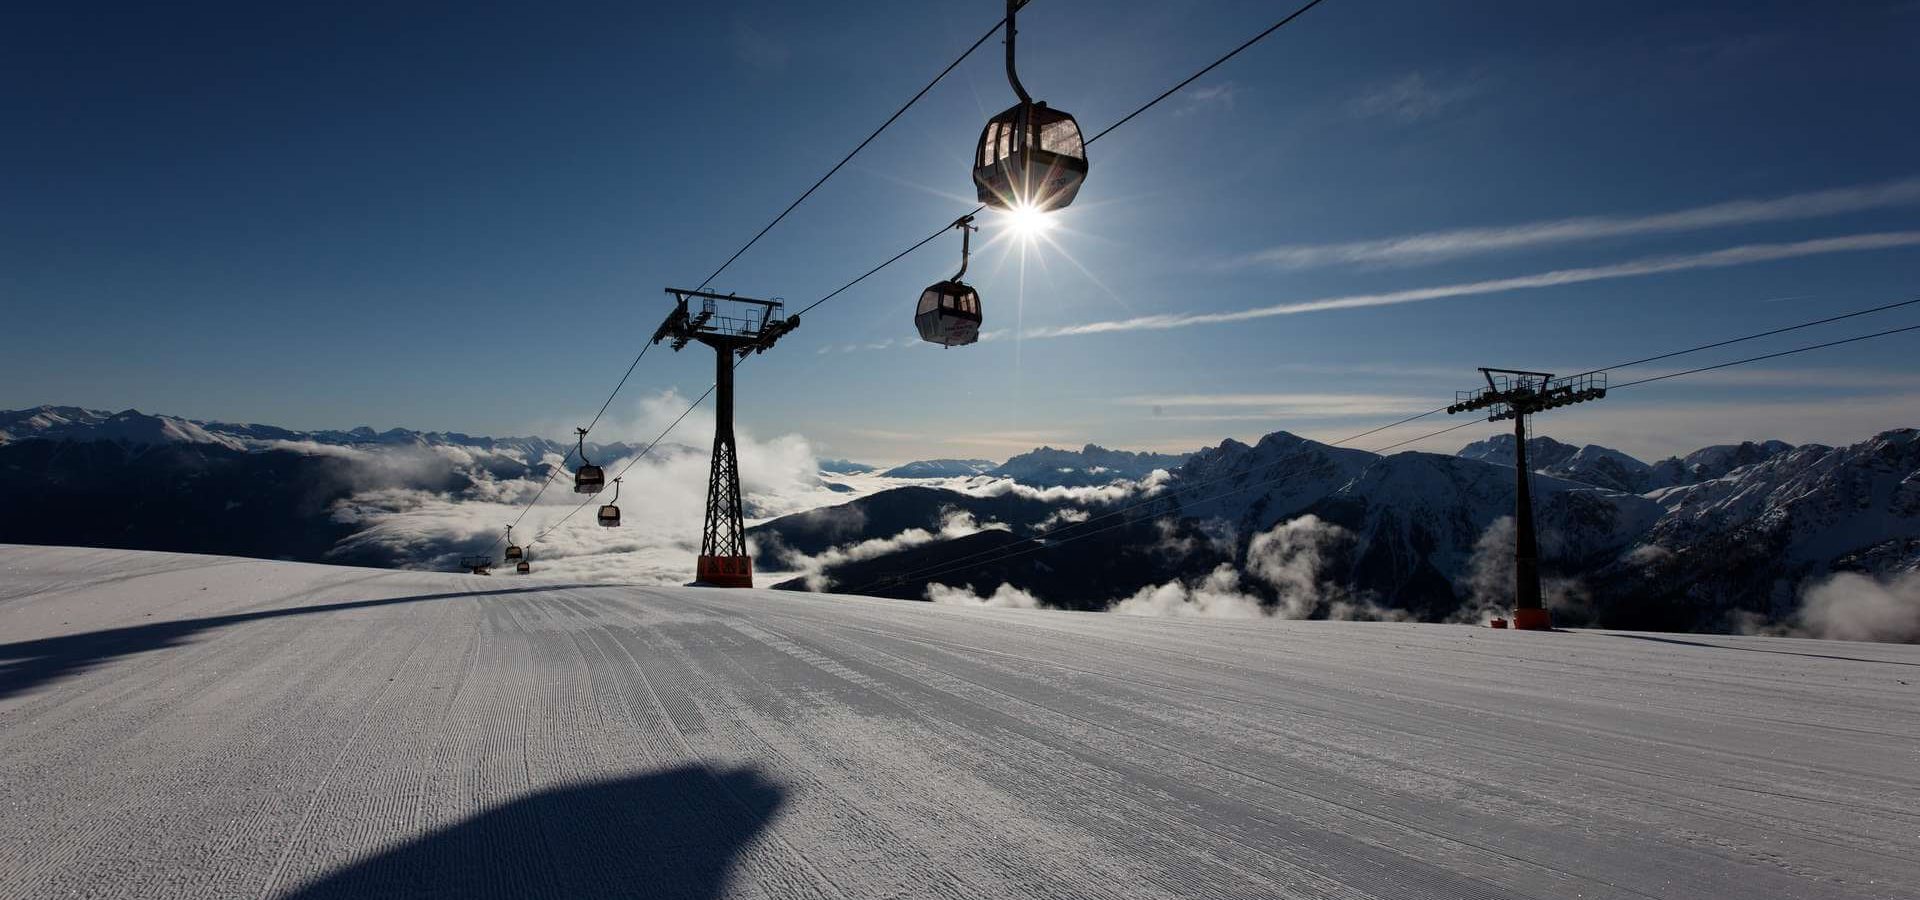 Winterurlaub Kronplatz Südtirol